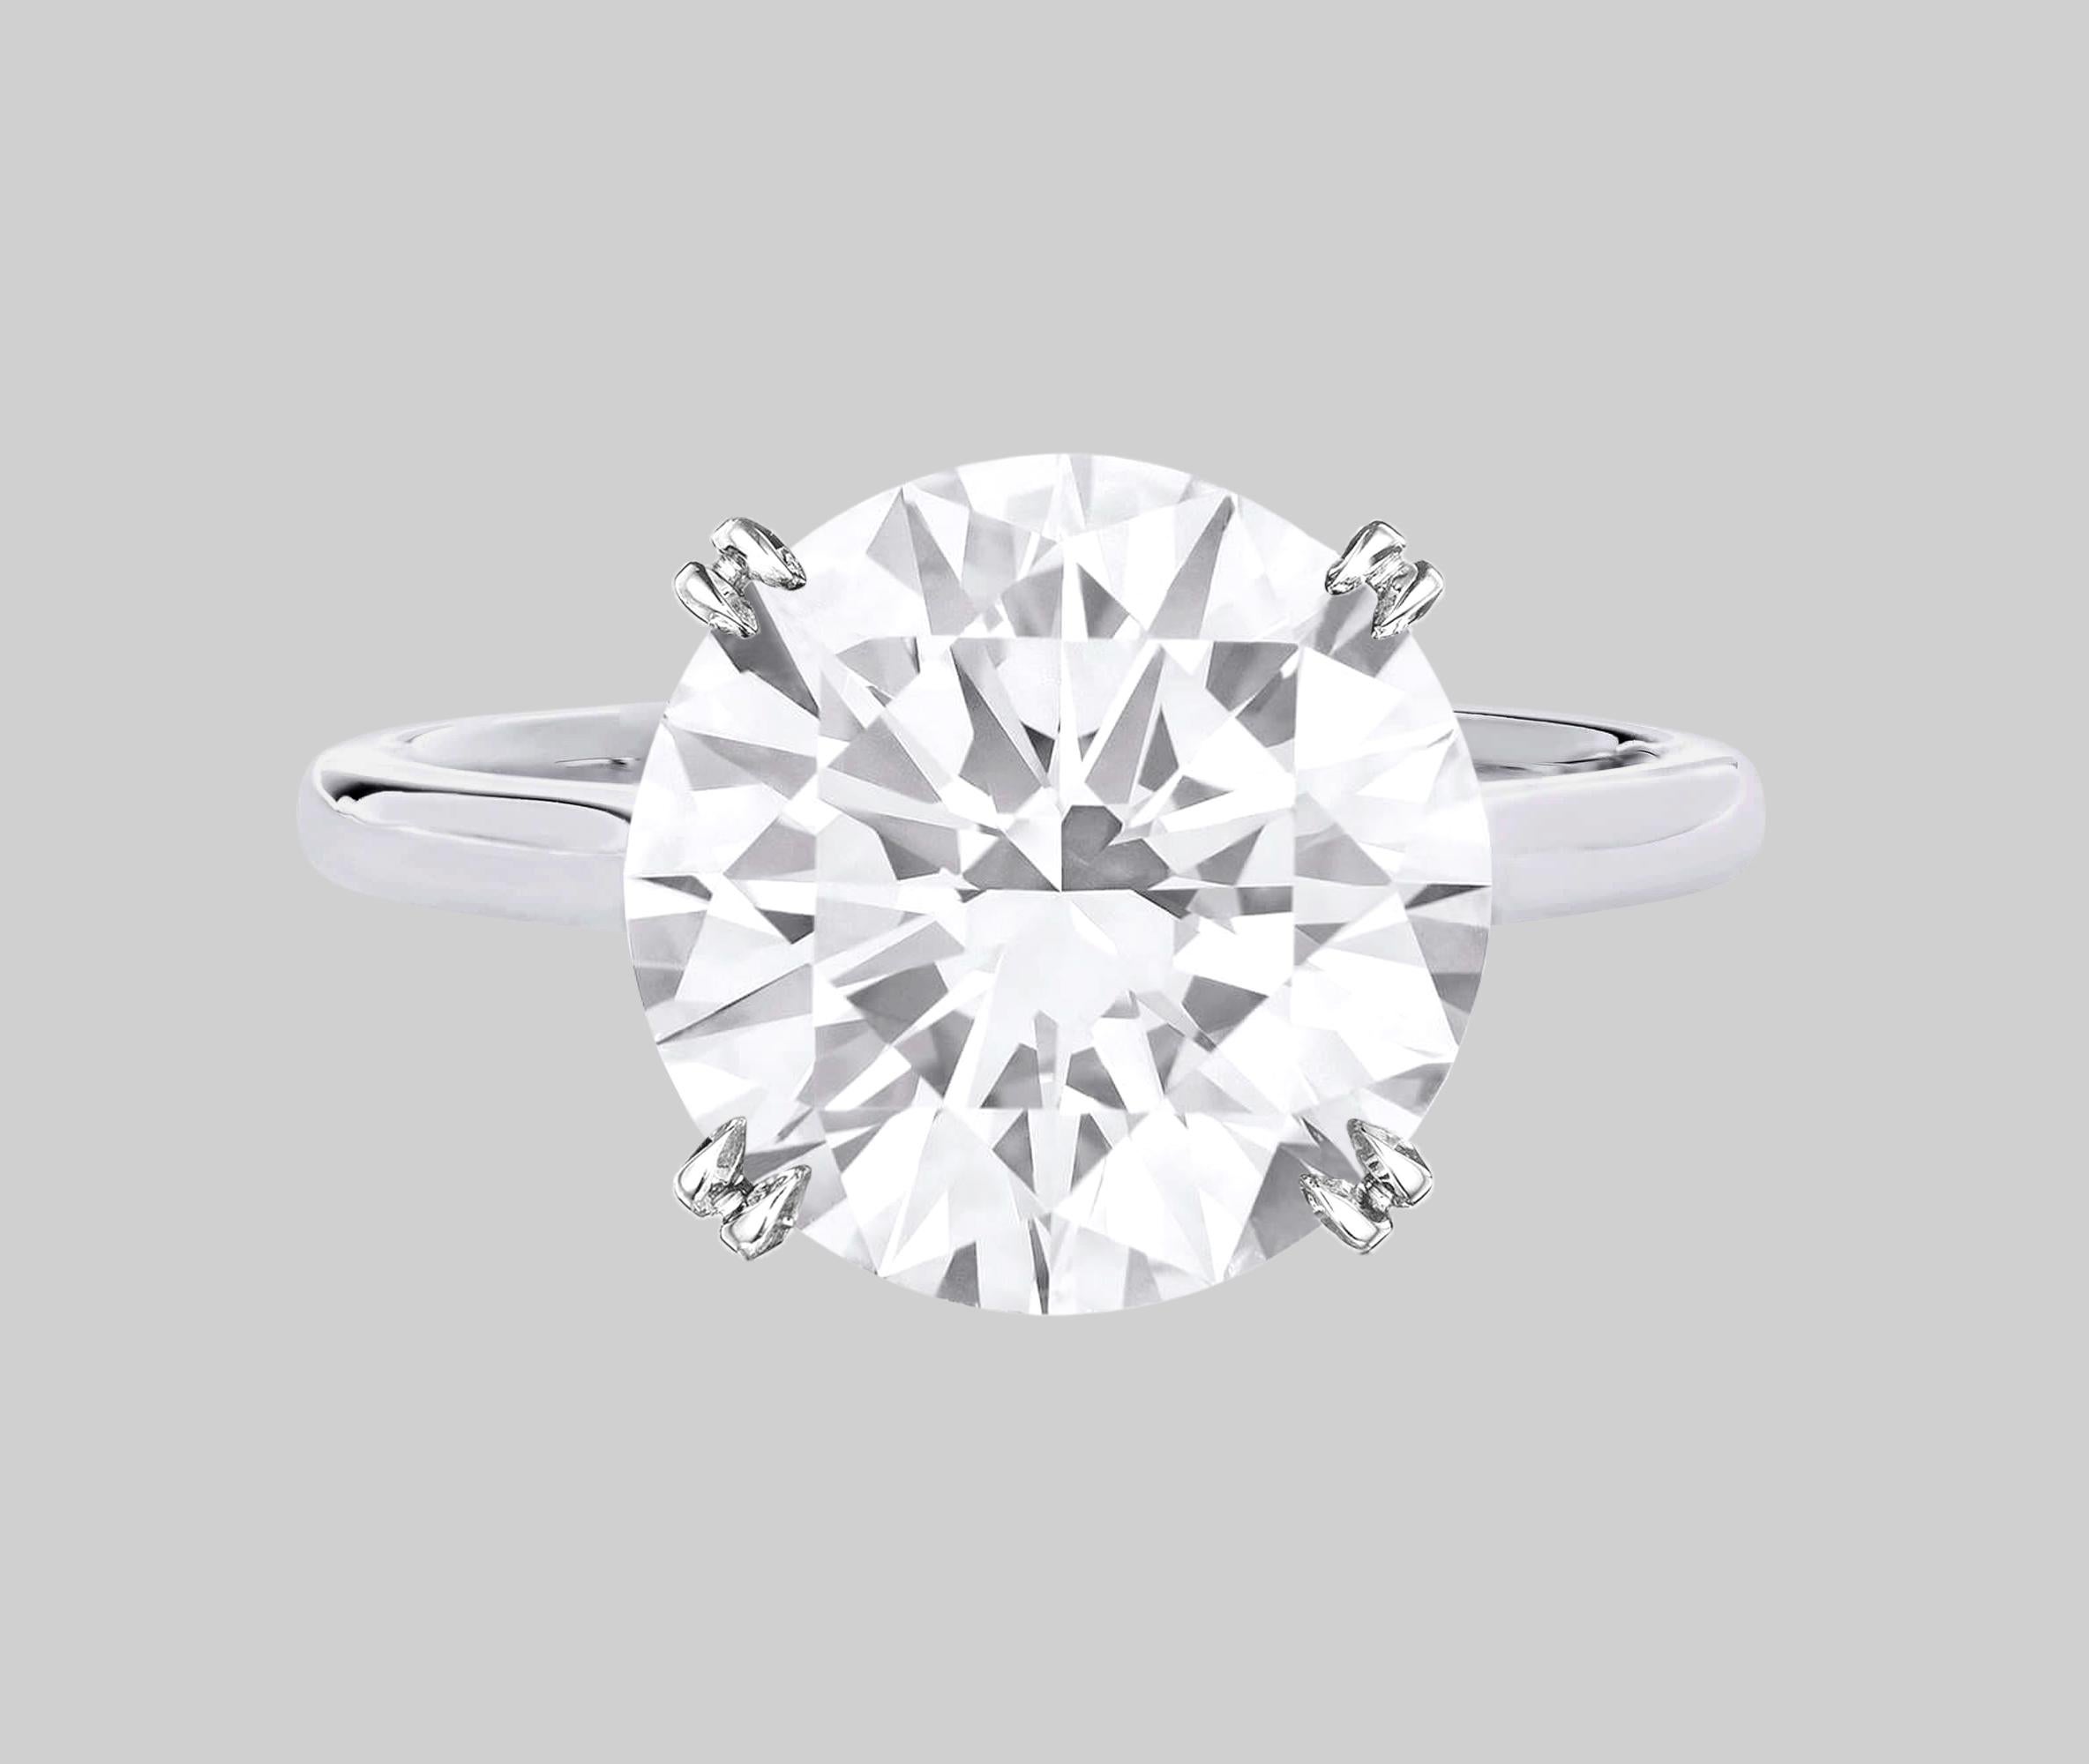 Bague en platine certifiée GIA de 4 carats de diamant rond taillé en brillant

L'éblouissant et substantiel diamant rond de 4 carats de taille brillant est d'un blanc éclatant, d'une propreté parfaite et d'une finition impeccable ! Taillée dans des